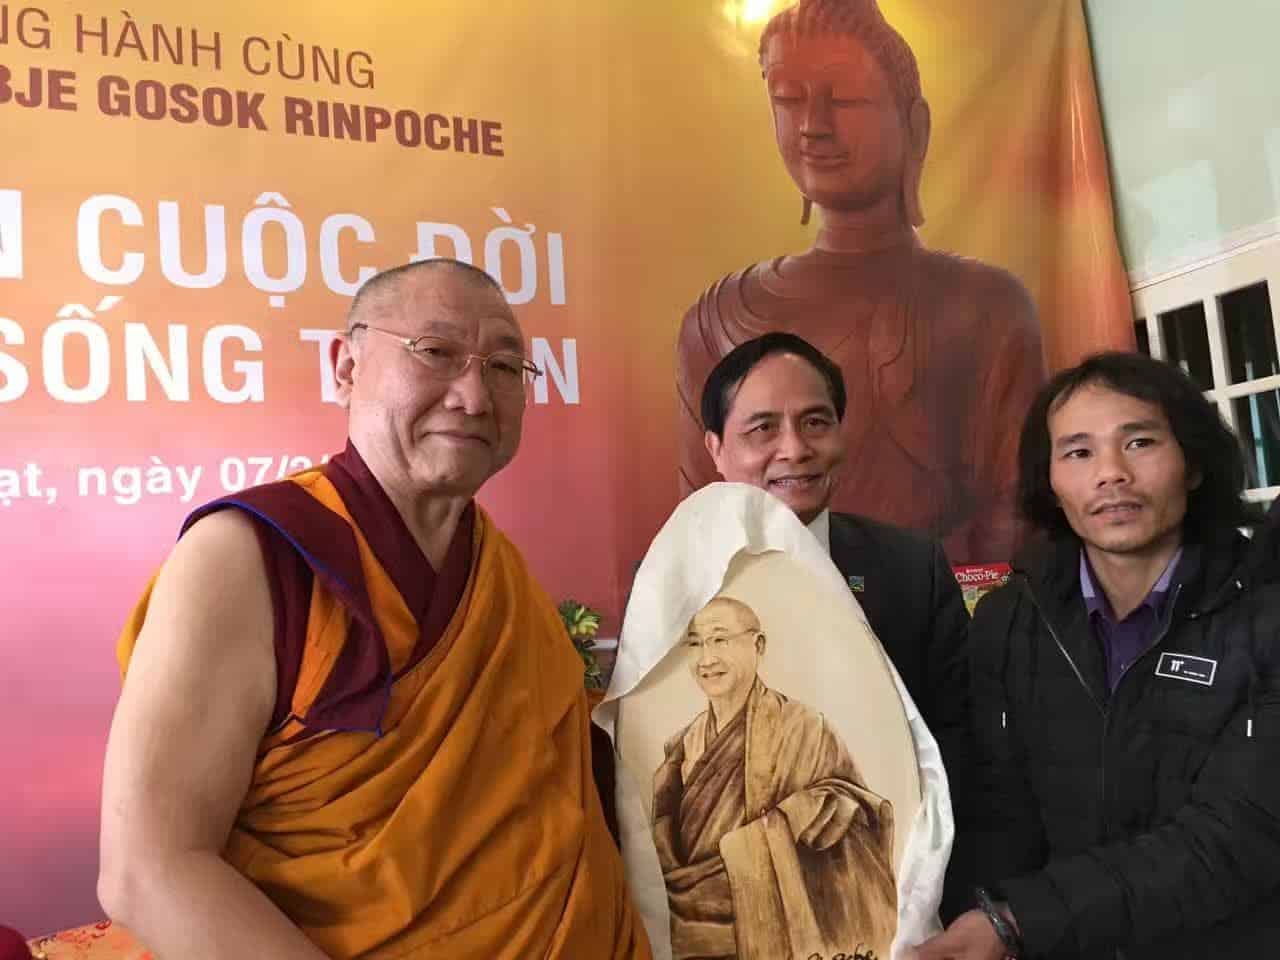 Gosok Rinpoche Vietnam 2017-03-07 133d1d2c5f39f19ef39cde22242dccf